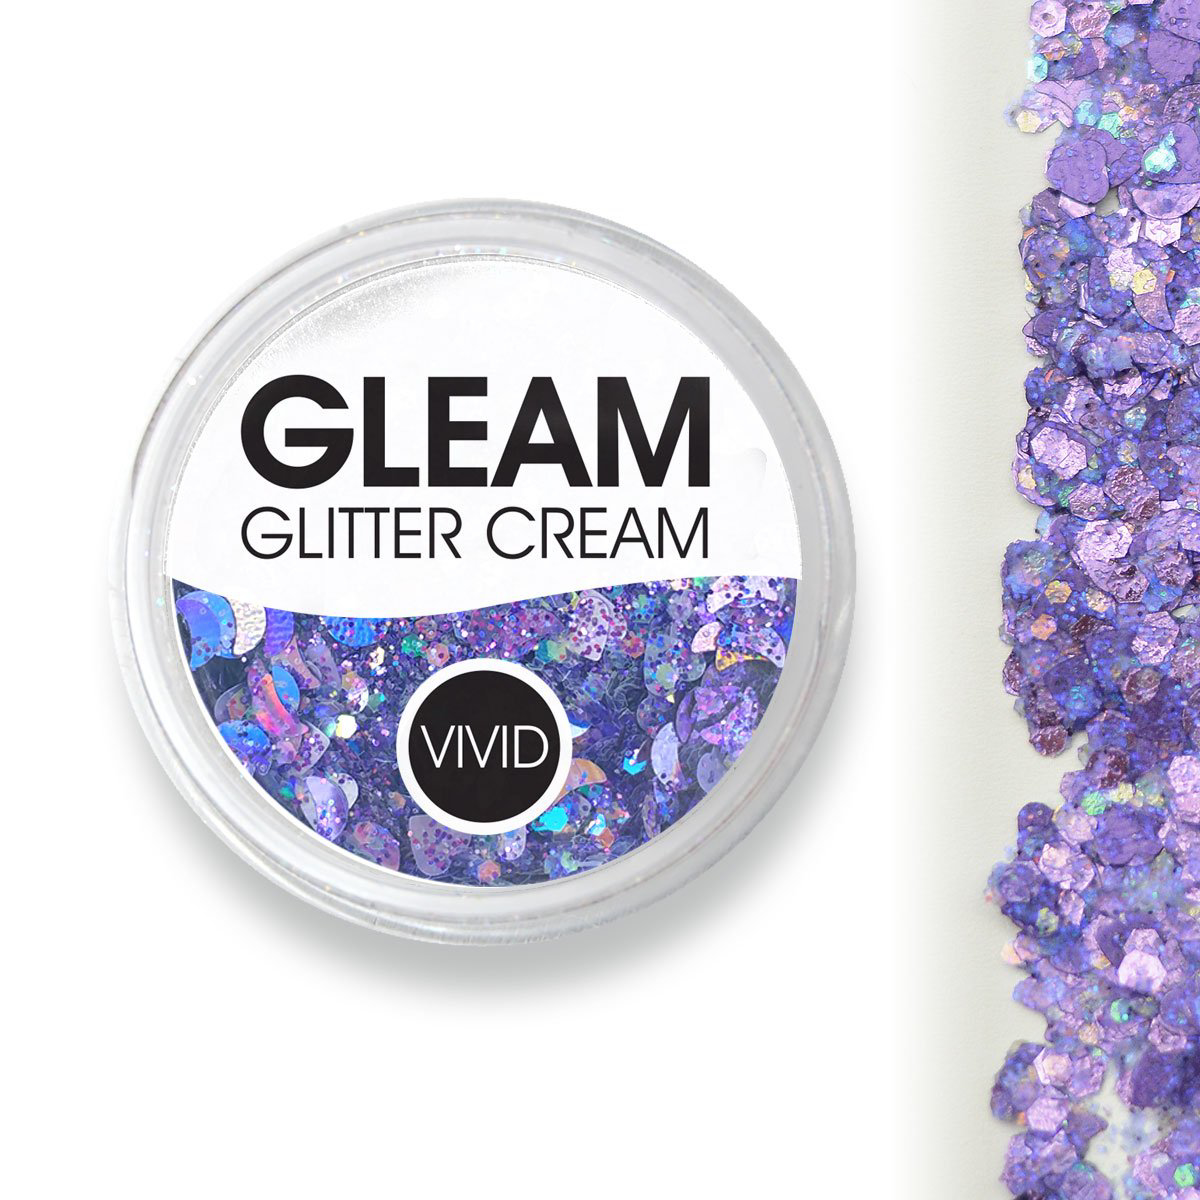 Picture of Vivid Glitter Cream - Gleam Purpose (25g)